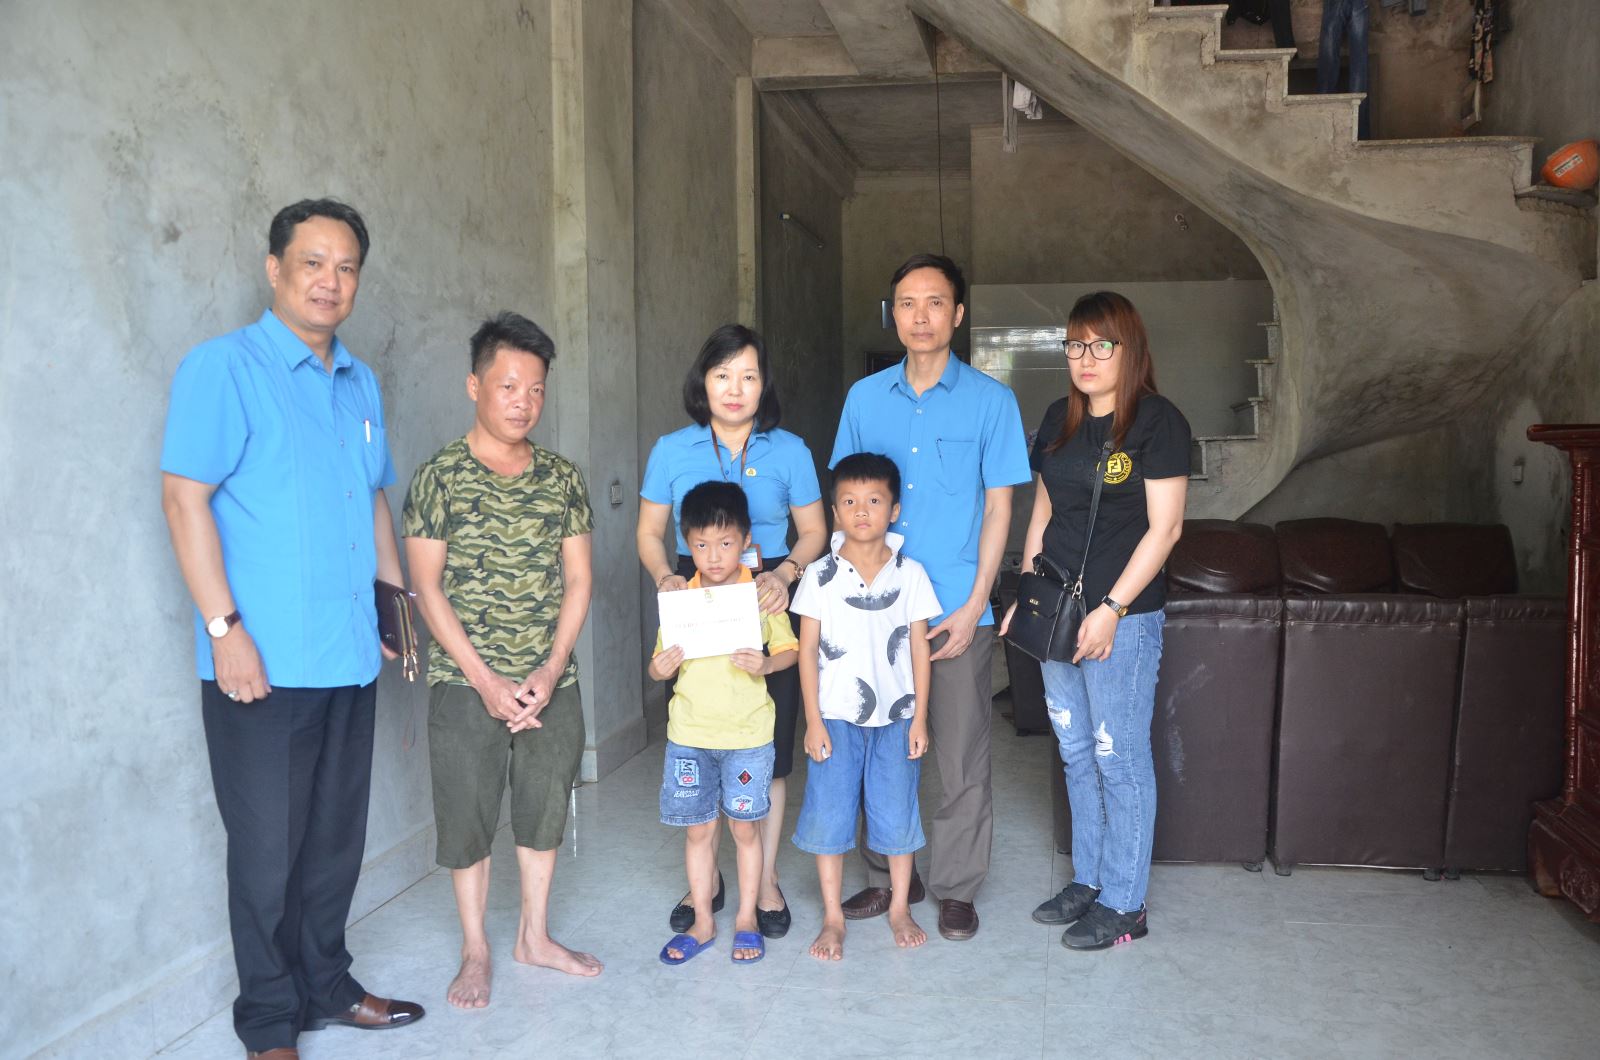 Liên đoàn Lao động tỉnh Bắc Ninh phối hợp Quỹ Tấm Lòng Vàng, tặng gia đình công nhân bị tai nạn lao động năm 2019.